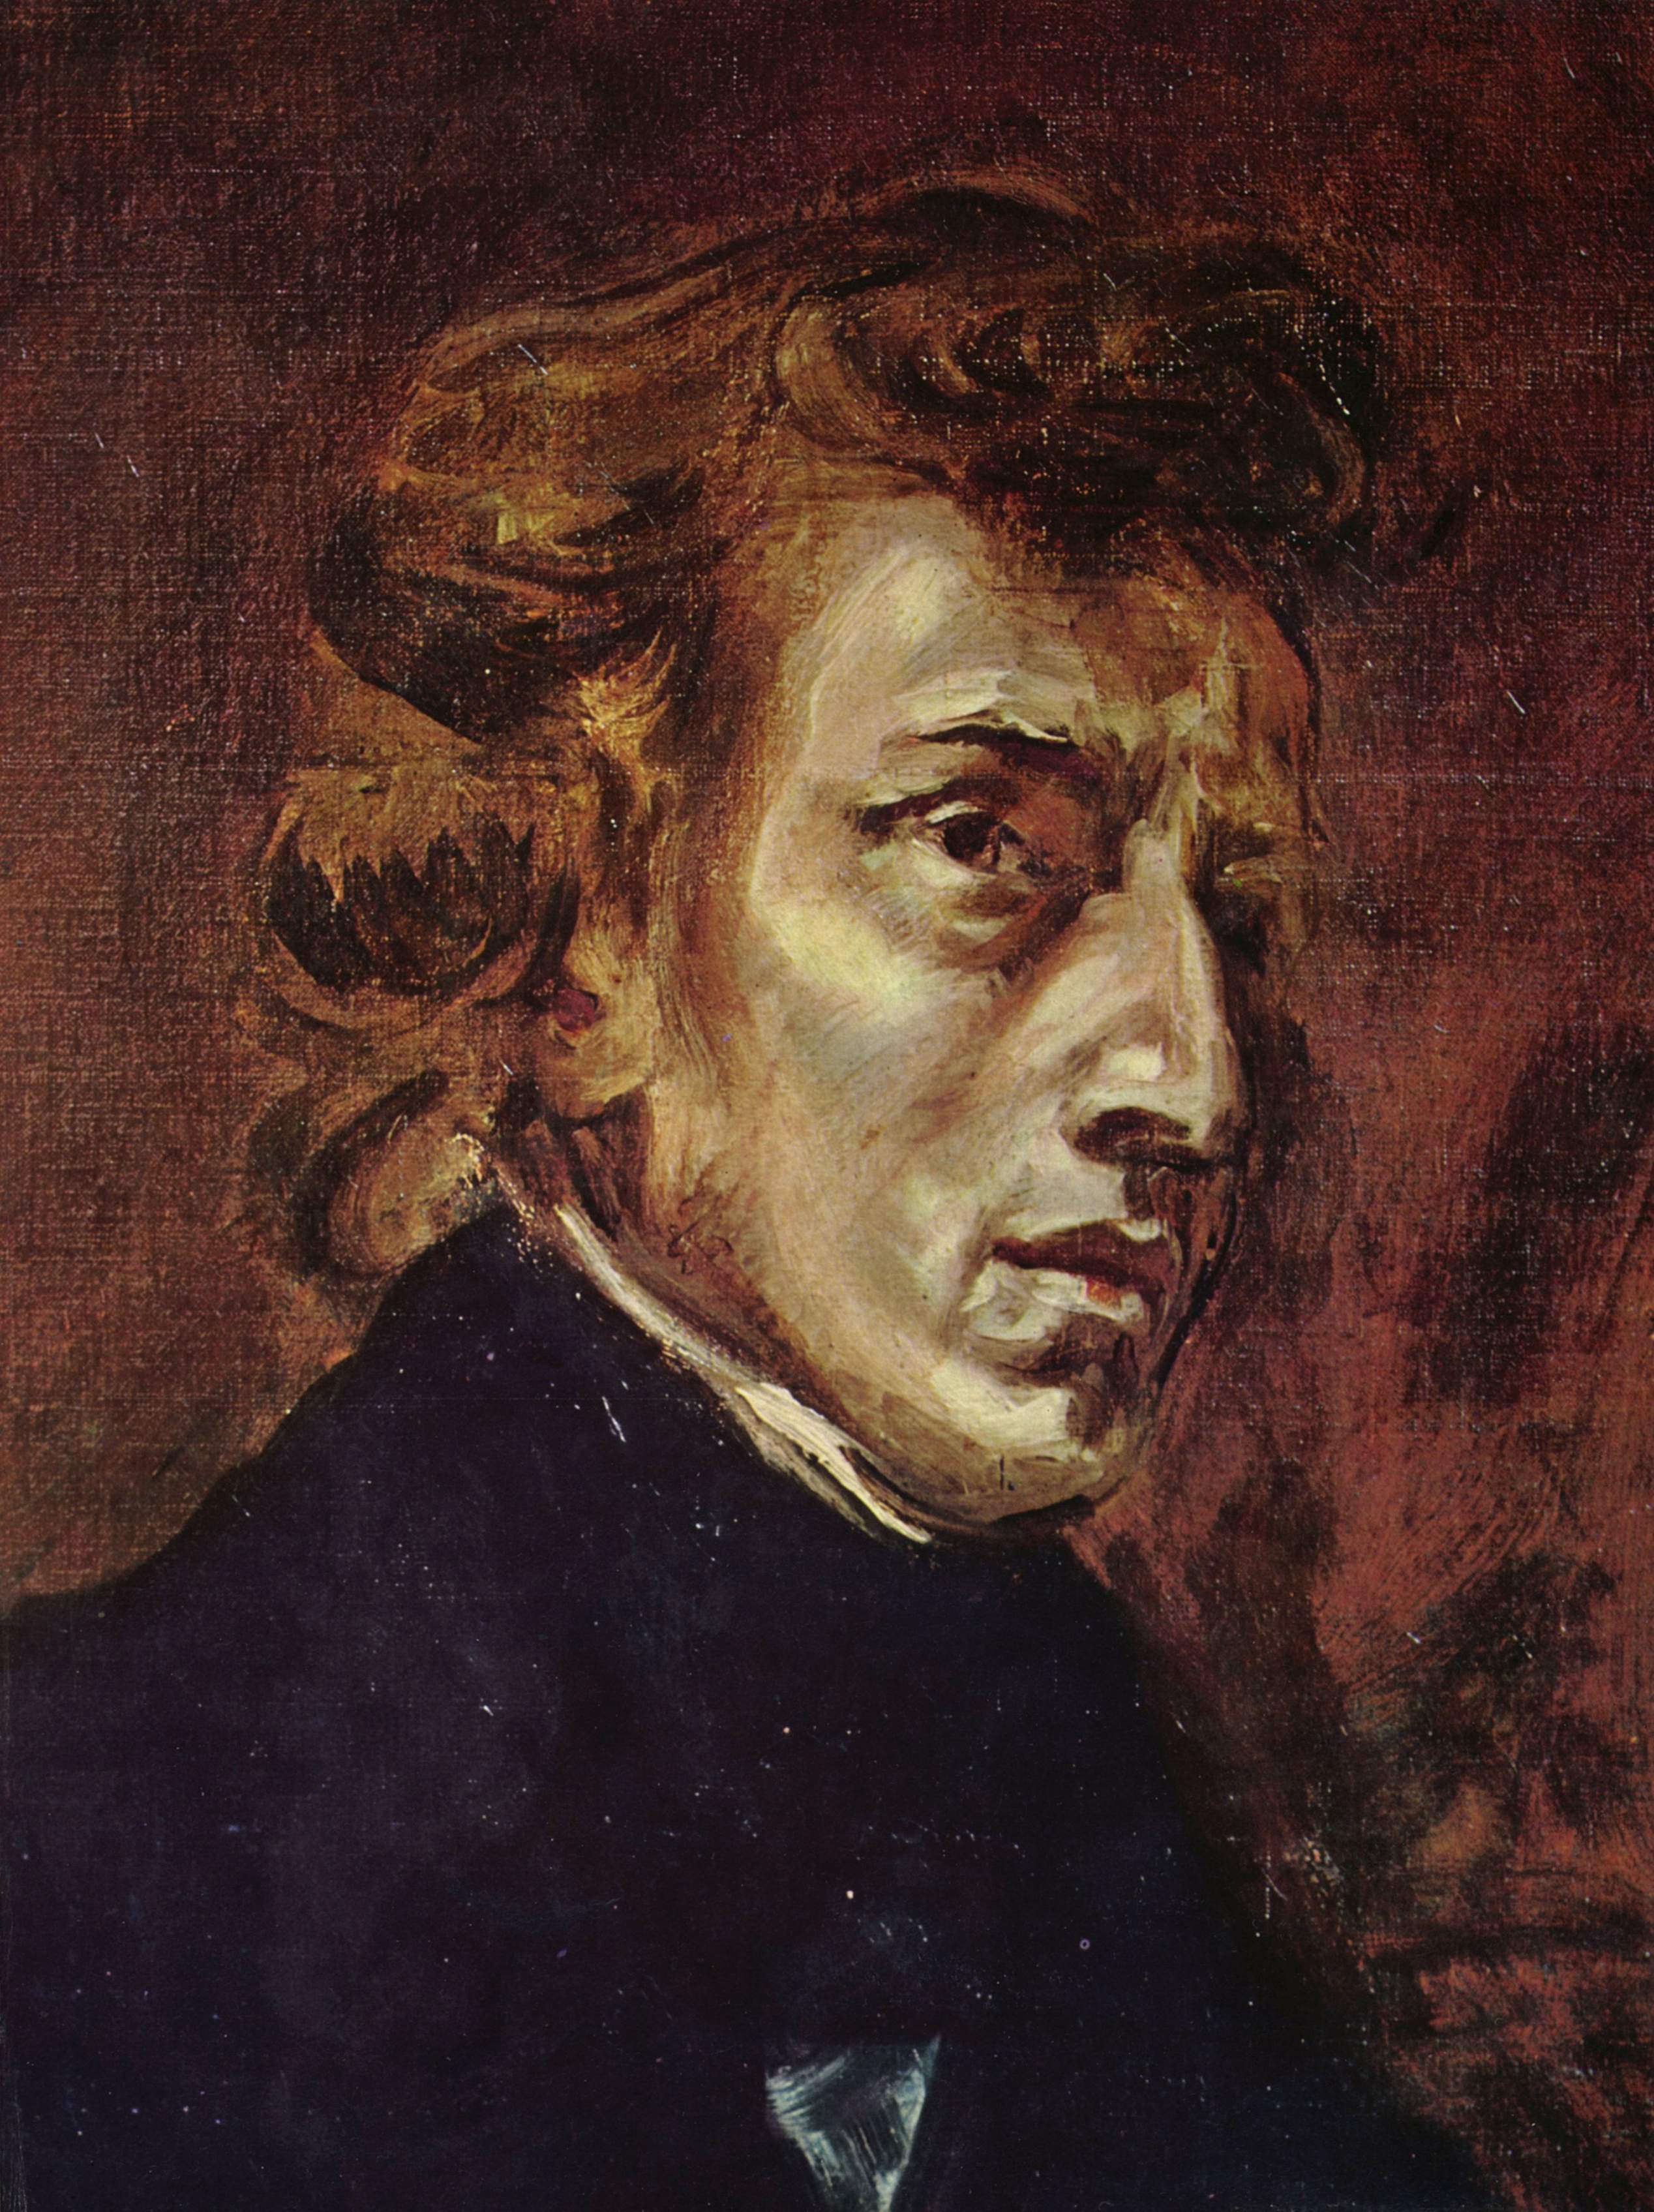 Portrait of Frédéric Chopin by Eugène Delacroix, oil on canvas, 1838.